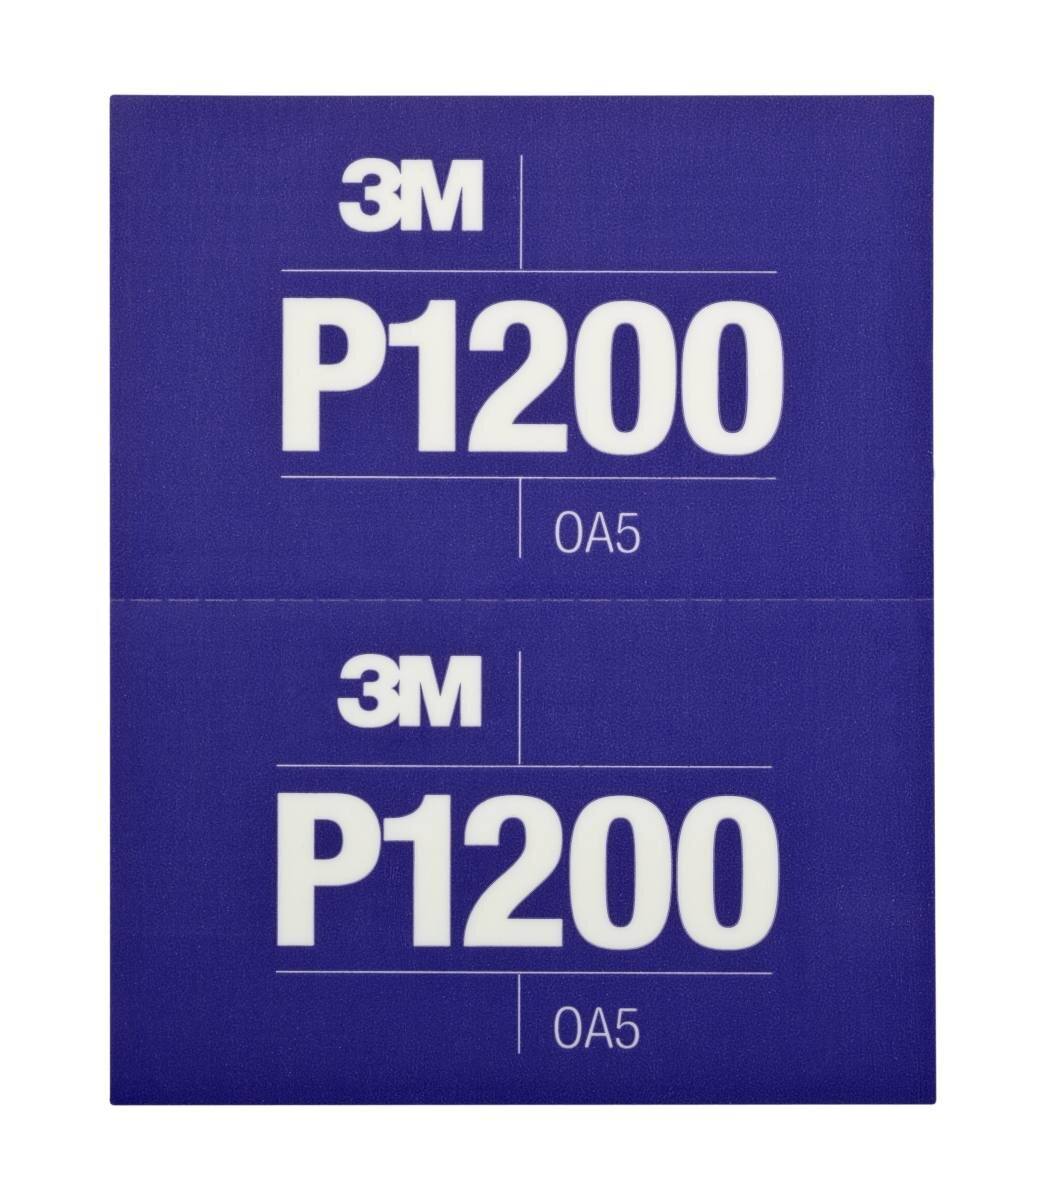  3M Hookit Joustavat hiomanauhat, violetti, 140 mm x 171 mm, P1200, 25 kpl / laatikko